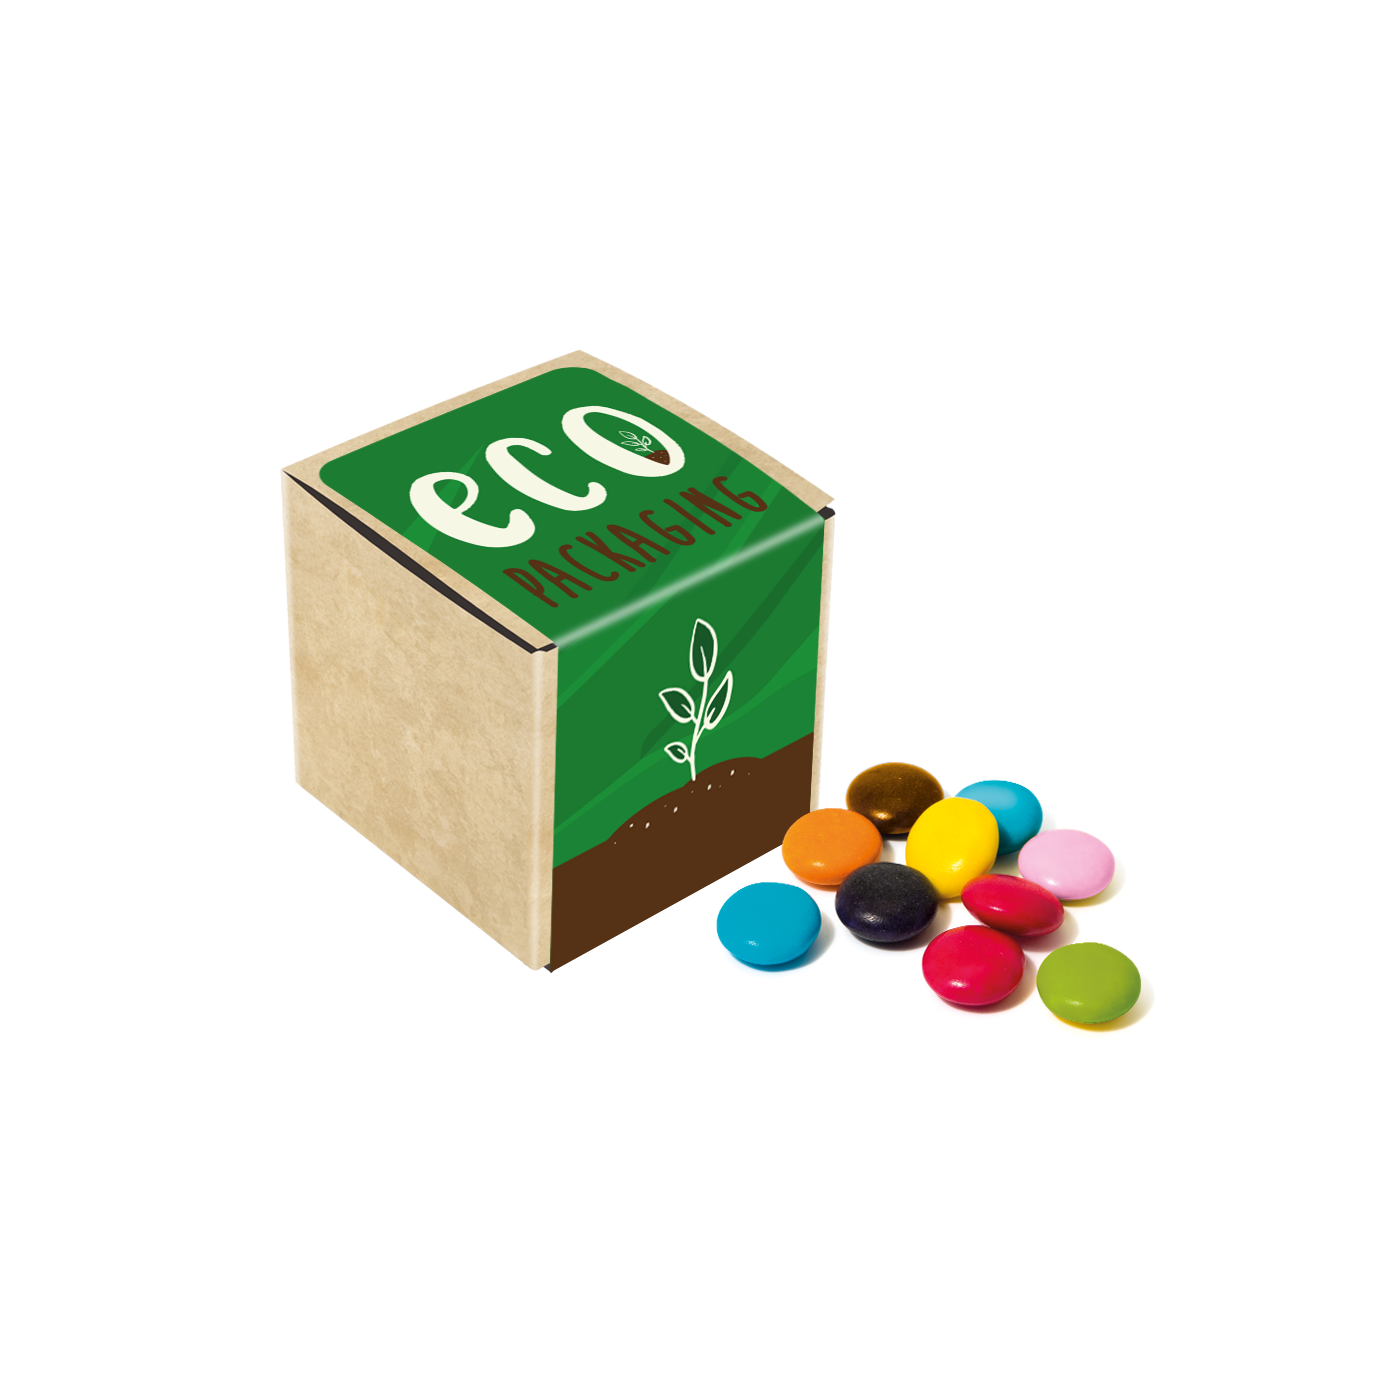 Eco Range - Eco Kraft Cube - Beanies - 50g